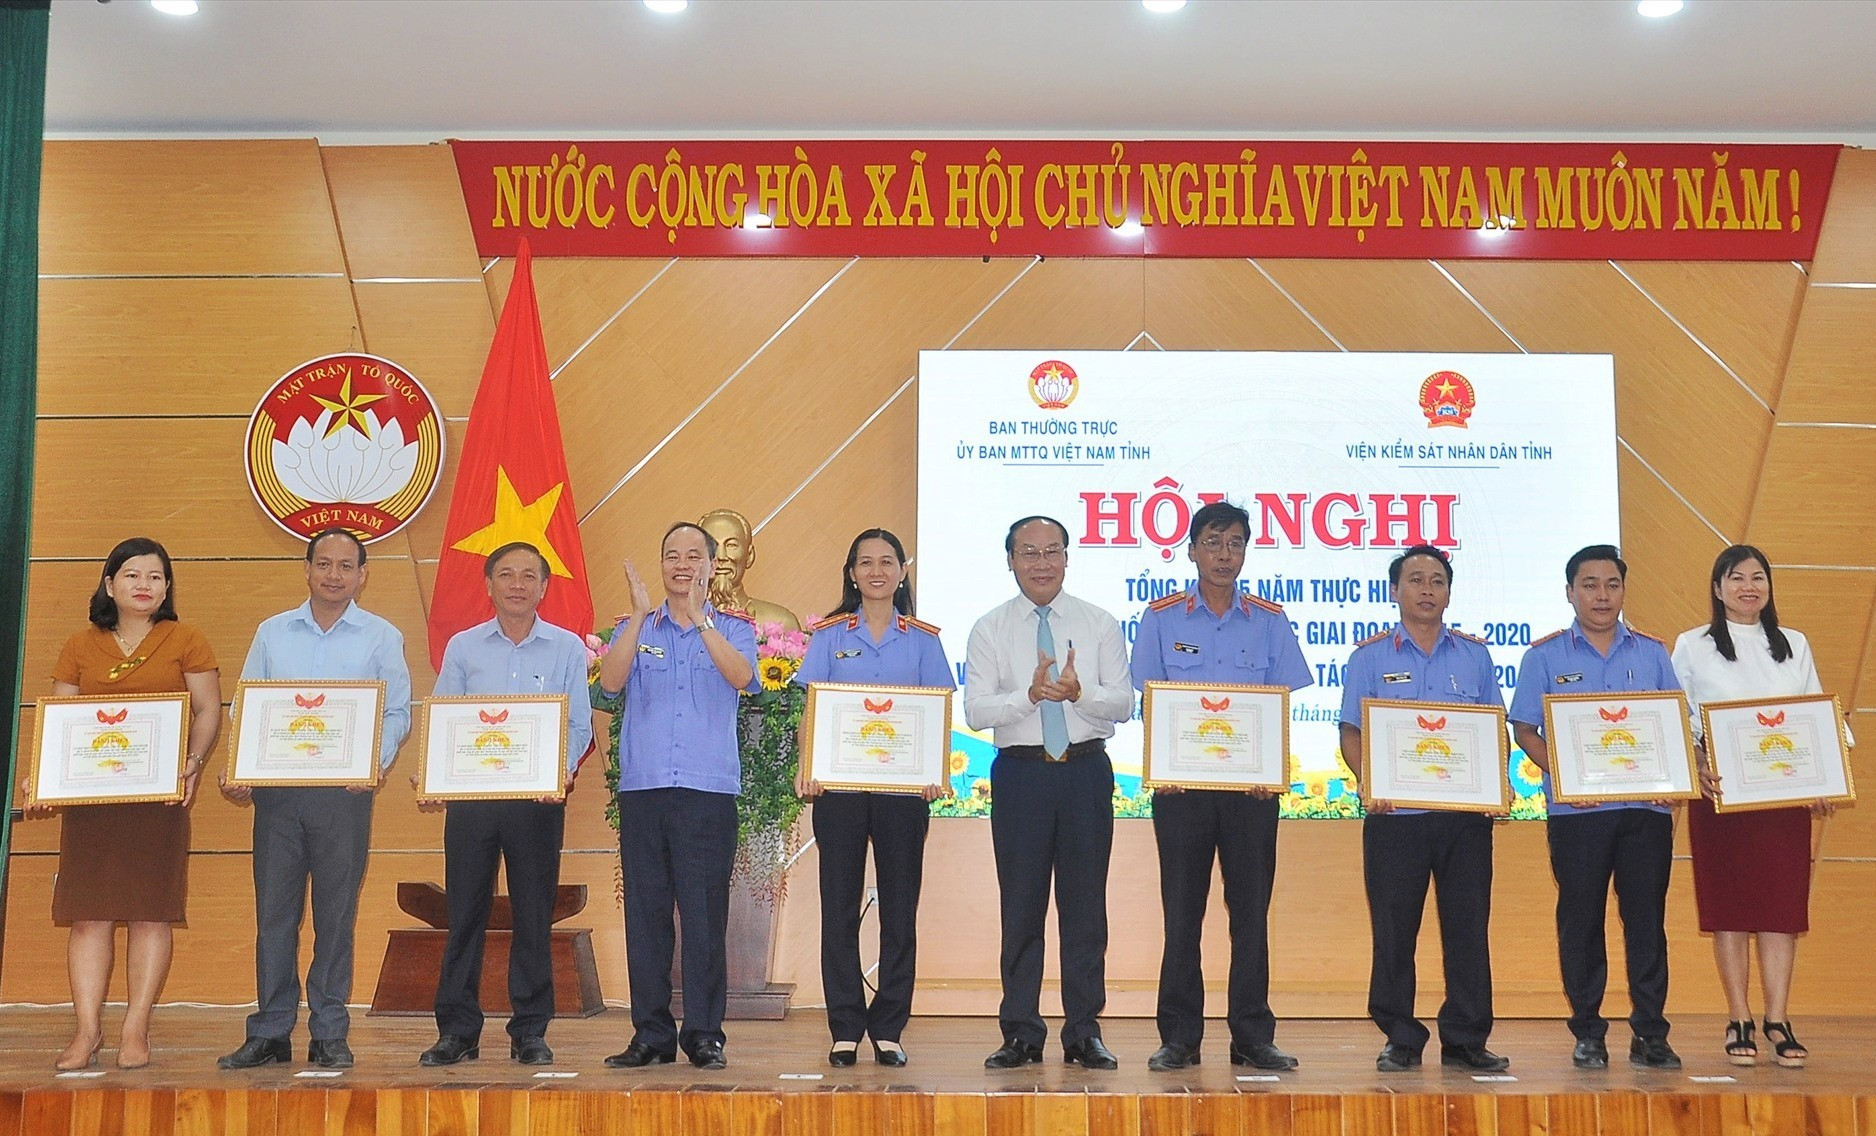 Ủy ban MTTQ Việt Nam khen thưởng các tập thể, cá nhân có thành tích đóng góp trong việc thực hiện quy chế phối hợp giai đoạn 2015 - 2020. Ảnh: VINH ANH